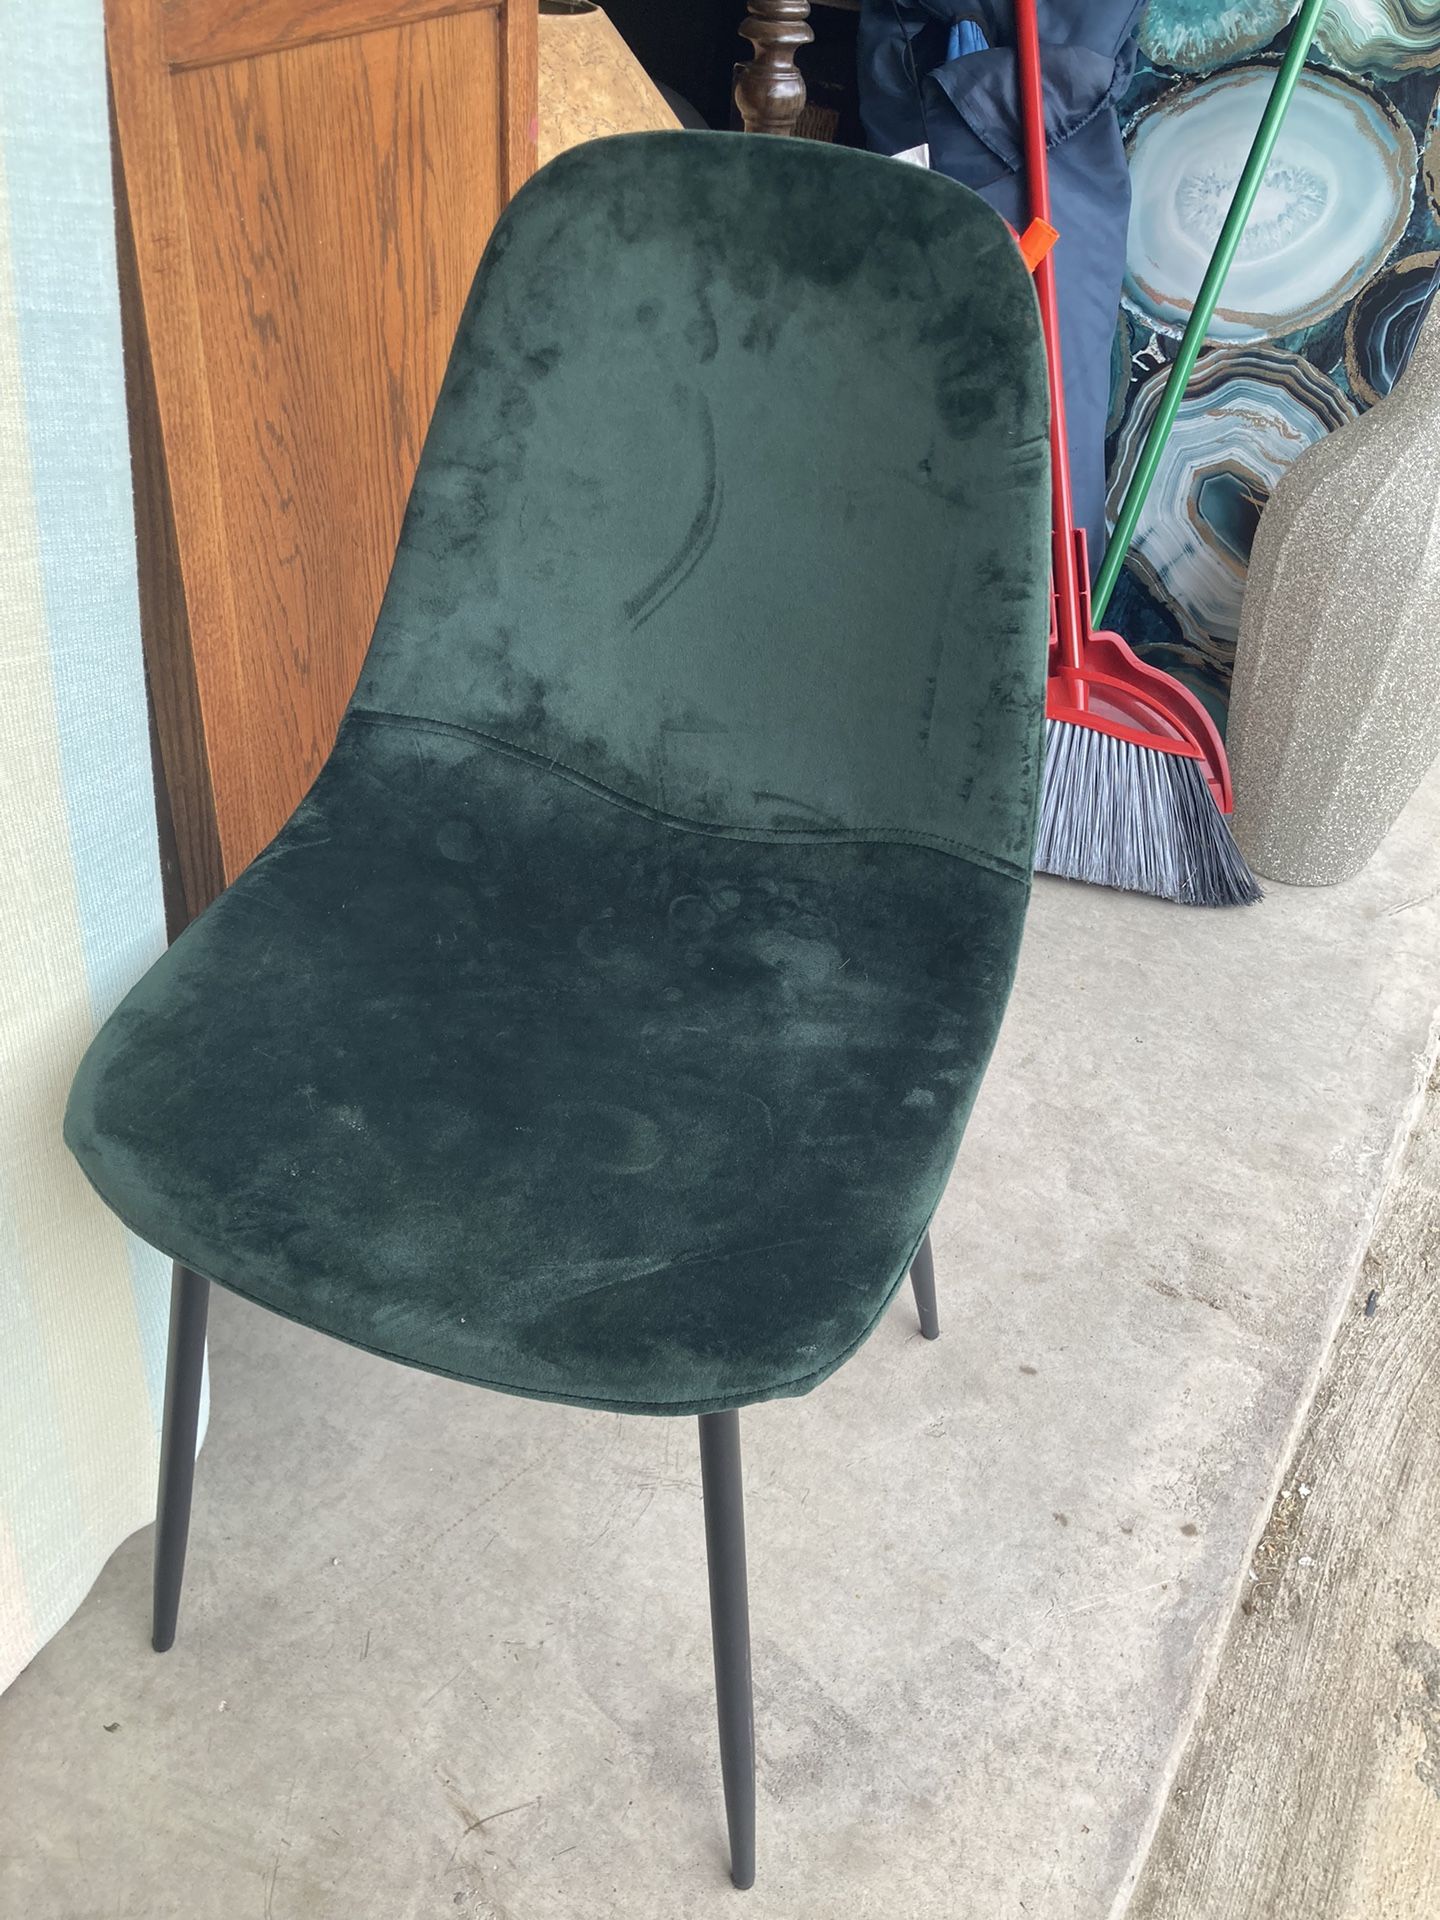 Green Velvet Chair 